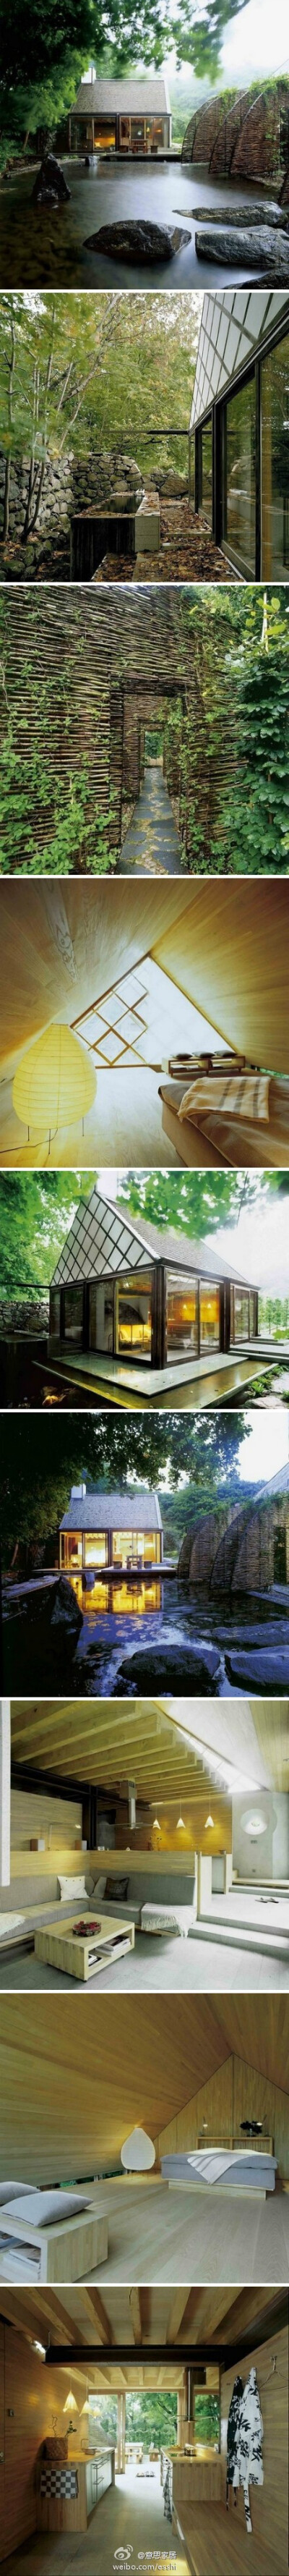 瑞典建筑师Wingardhs设计的乡村度假小屋，景观和室内设计都充满禅意。